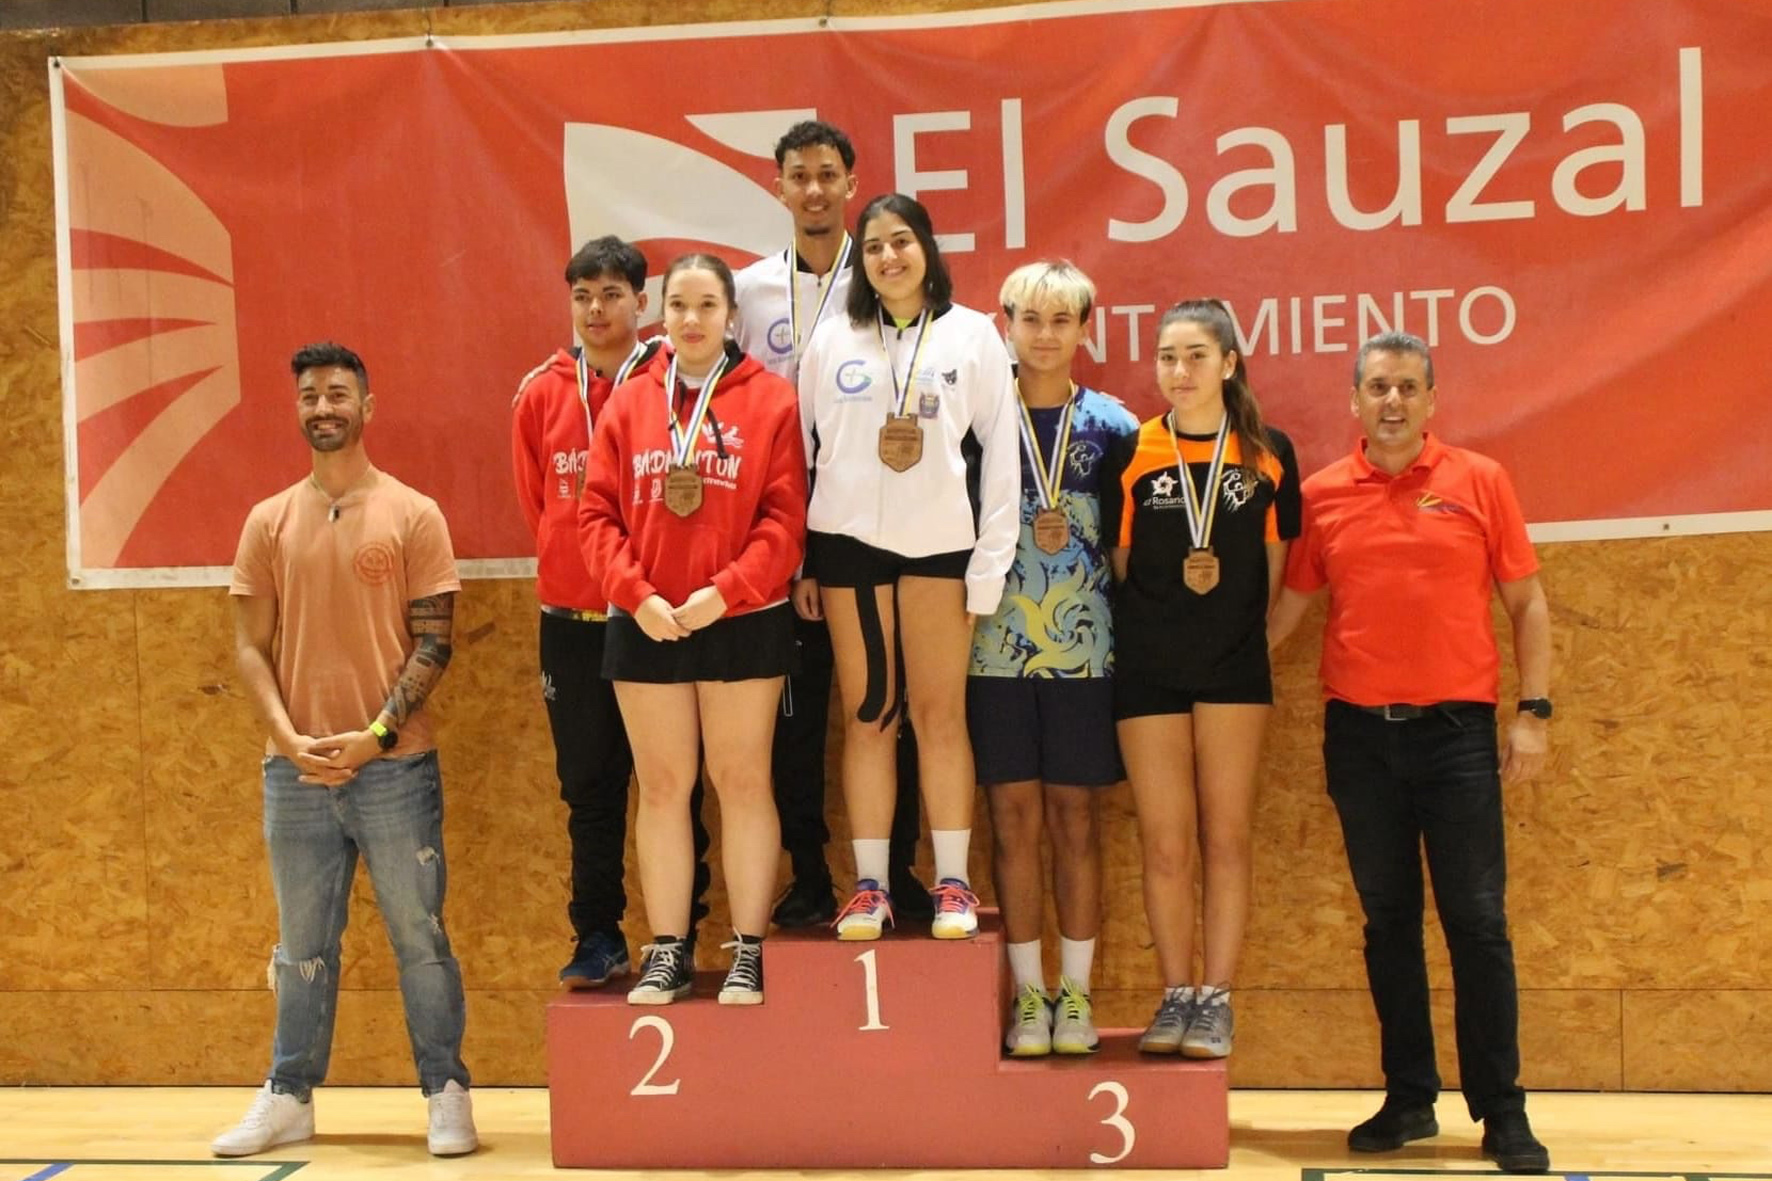 La representación herreña logra 4 medallas en el Campeonato de Canarias de Bádminton